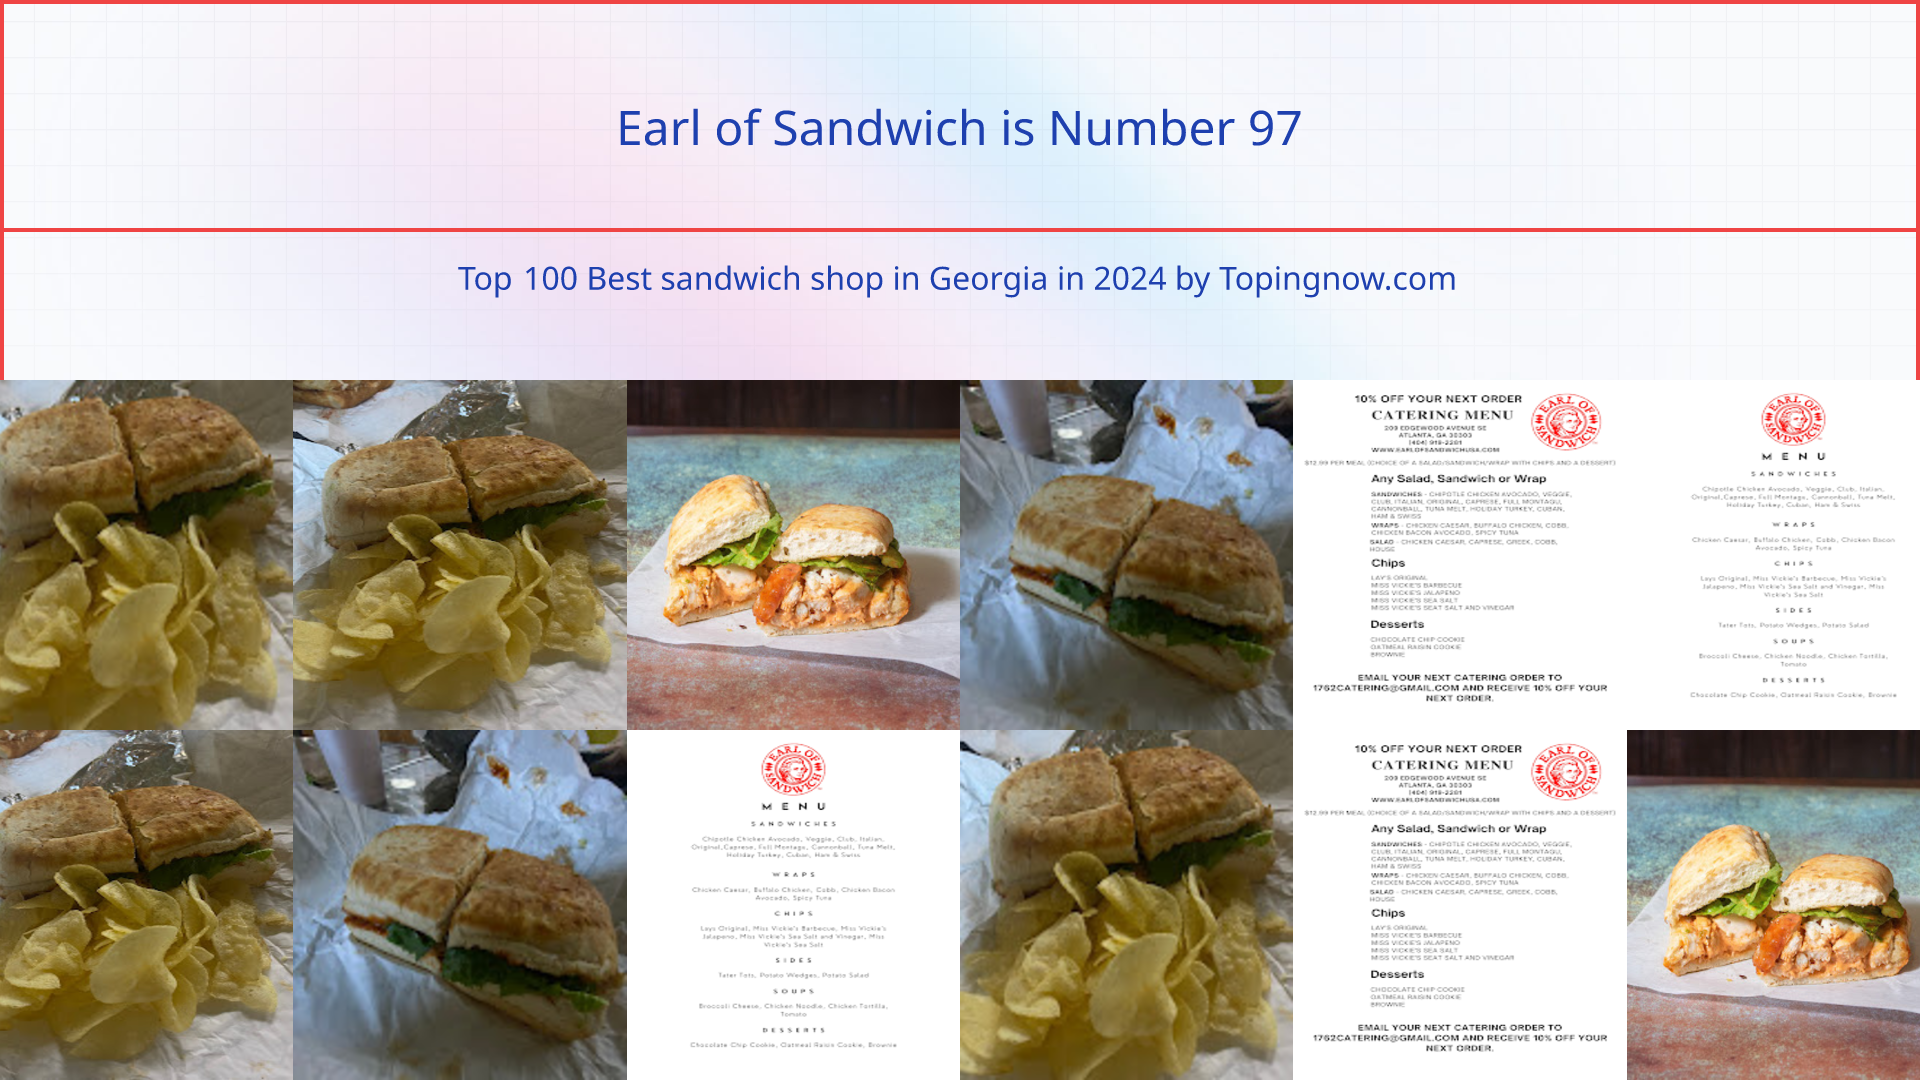 Earl of Sandwich: Top 100 Best sandwich shop in Georgia in 2024